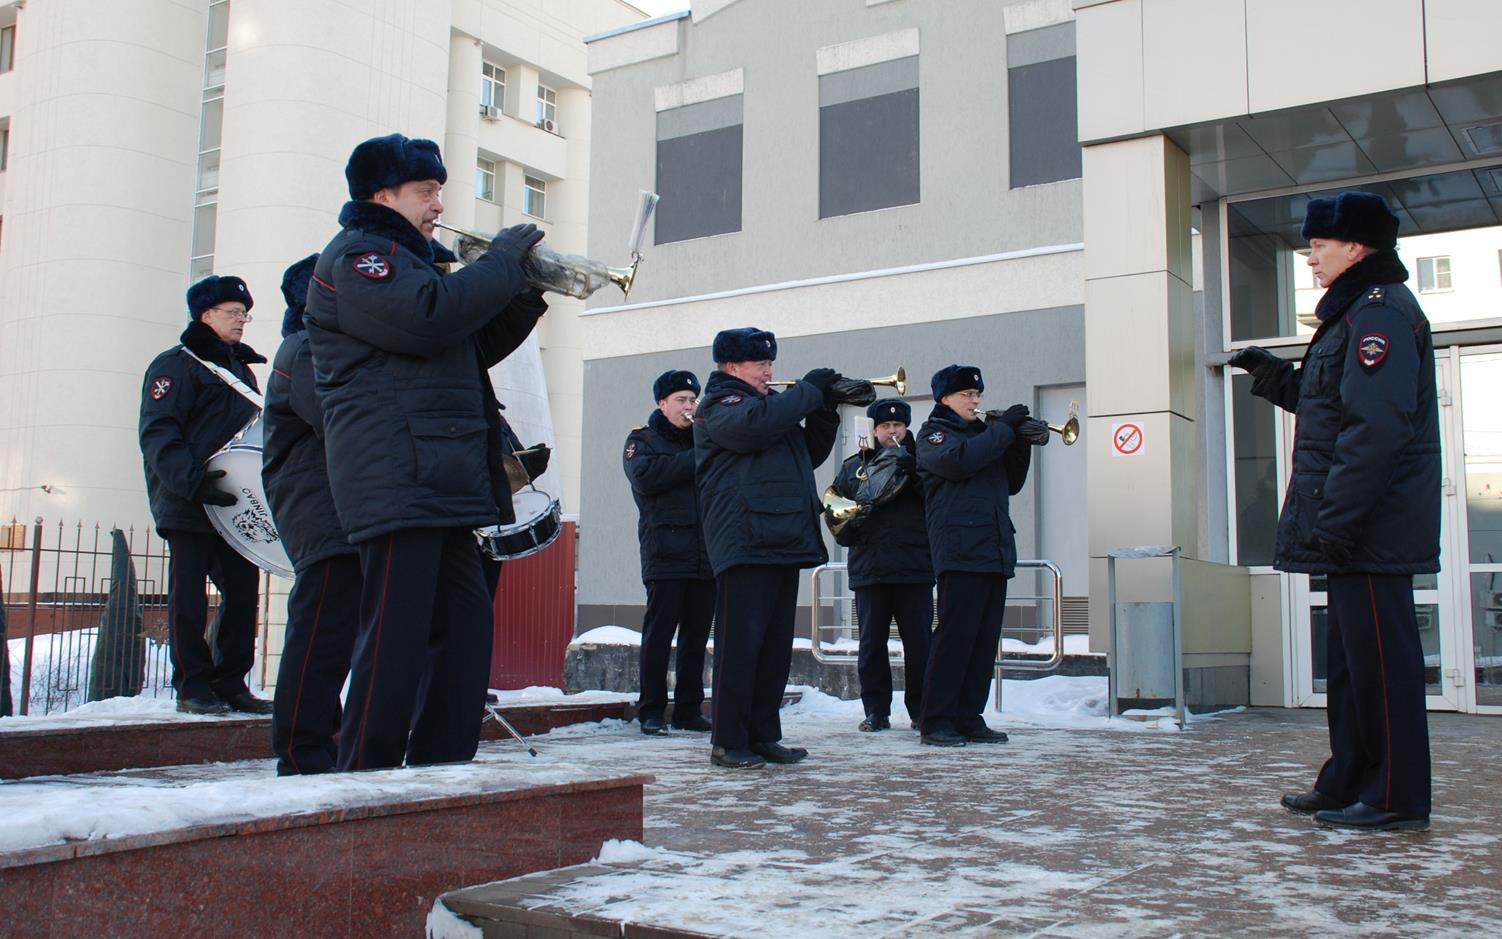 Оркестр нижегородской полиции сделал музыкальный подарок женщинам (ФОТО, ВИДЕО) - фото 1